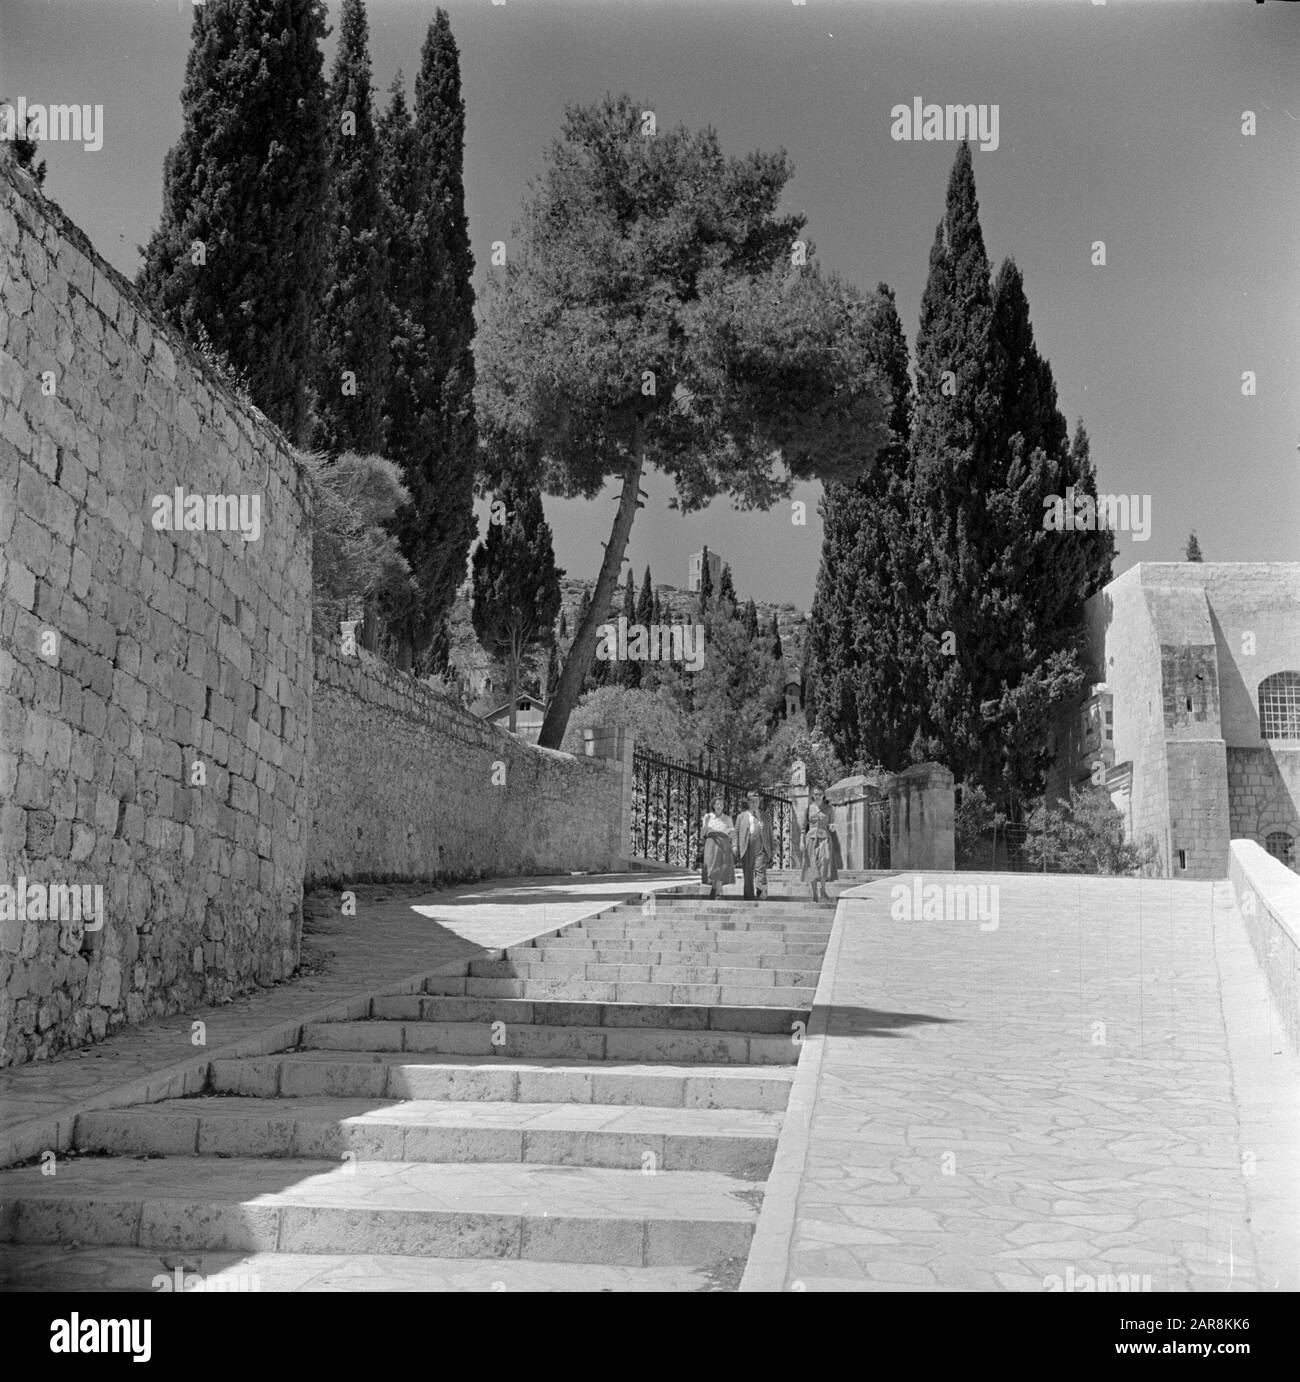 Israel 1948-1949: Ain Karem Straße in ein Karem mit Treppen und drei Wanderern Datum: 1948 Ort: Ain Karem, Israel, Jerusalem Schlüsselwörter: Bäume, Wände, Treppen, Fußgänger Stockfoto